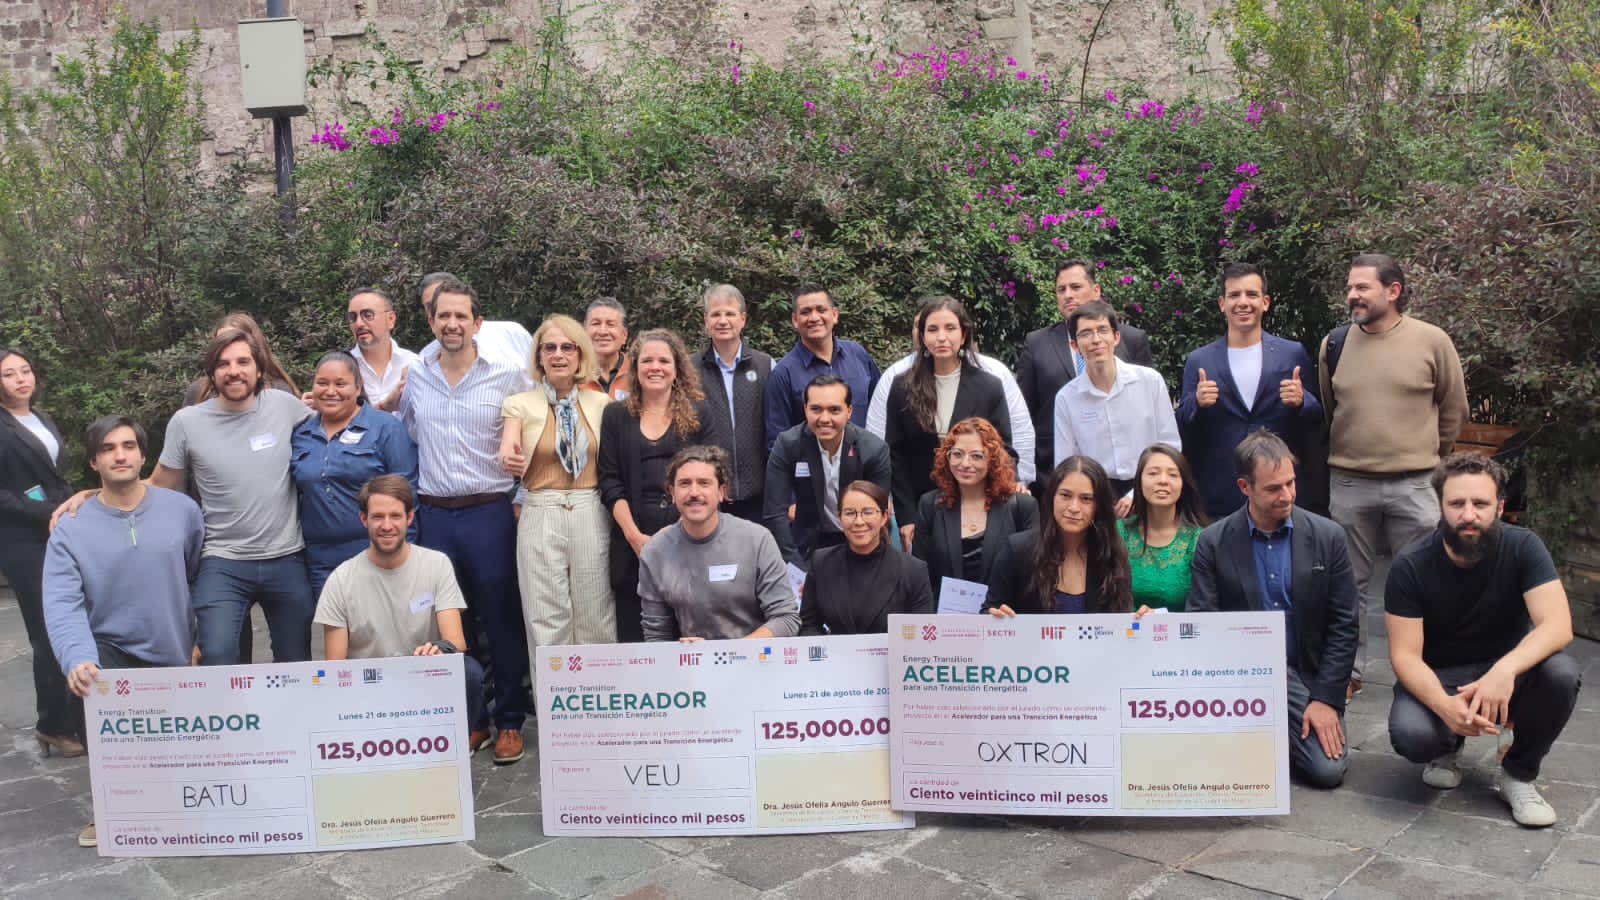 Oxtron, una de las ganadoras del programa Acelerador de Transición Energética en Ciudad de México